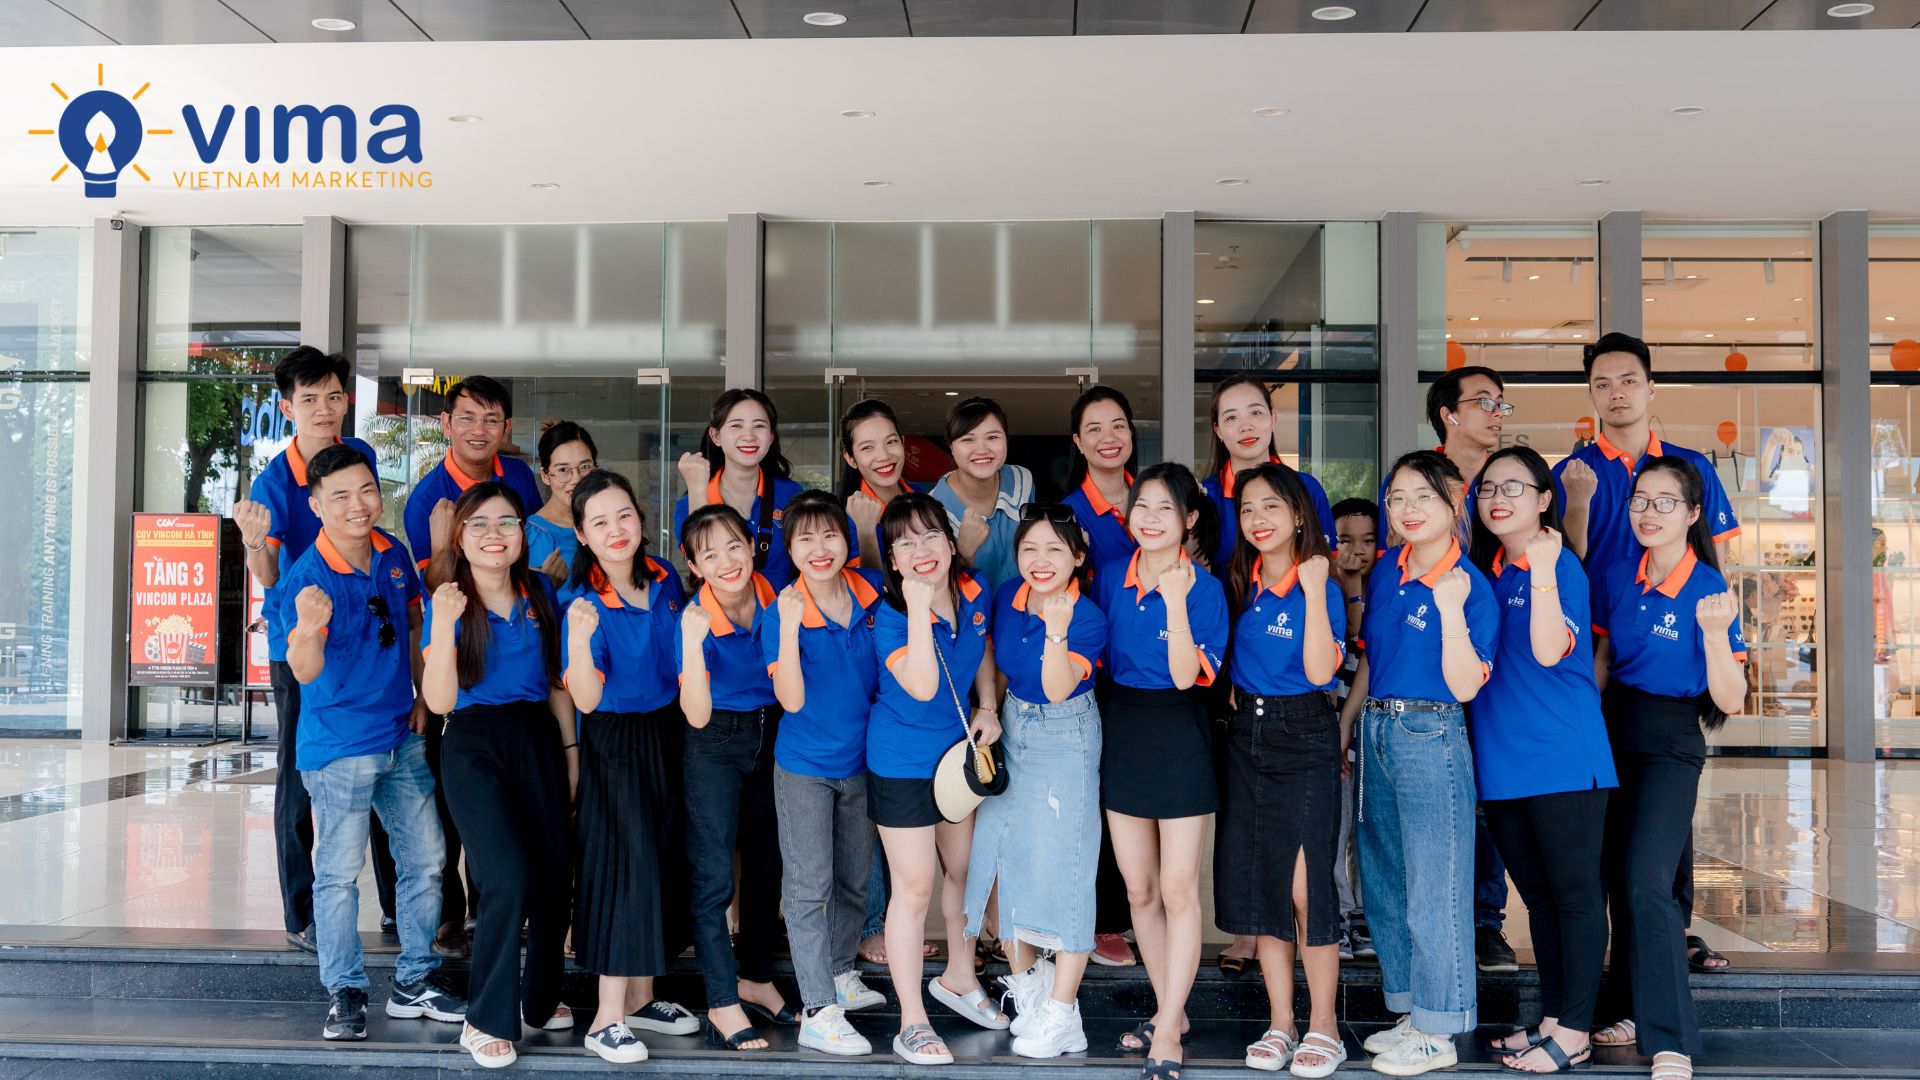 Việt Nam Marketing - Đơn vị tư vấn Marketing tổng thể chuyên nghiệp tại Hà Tĩnh